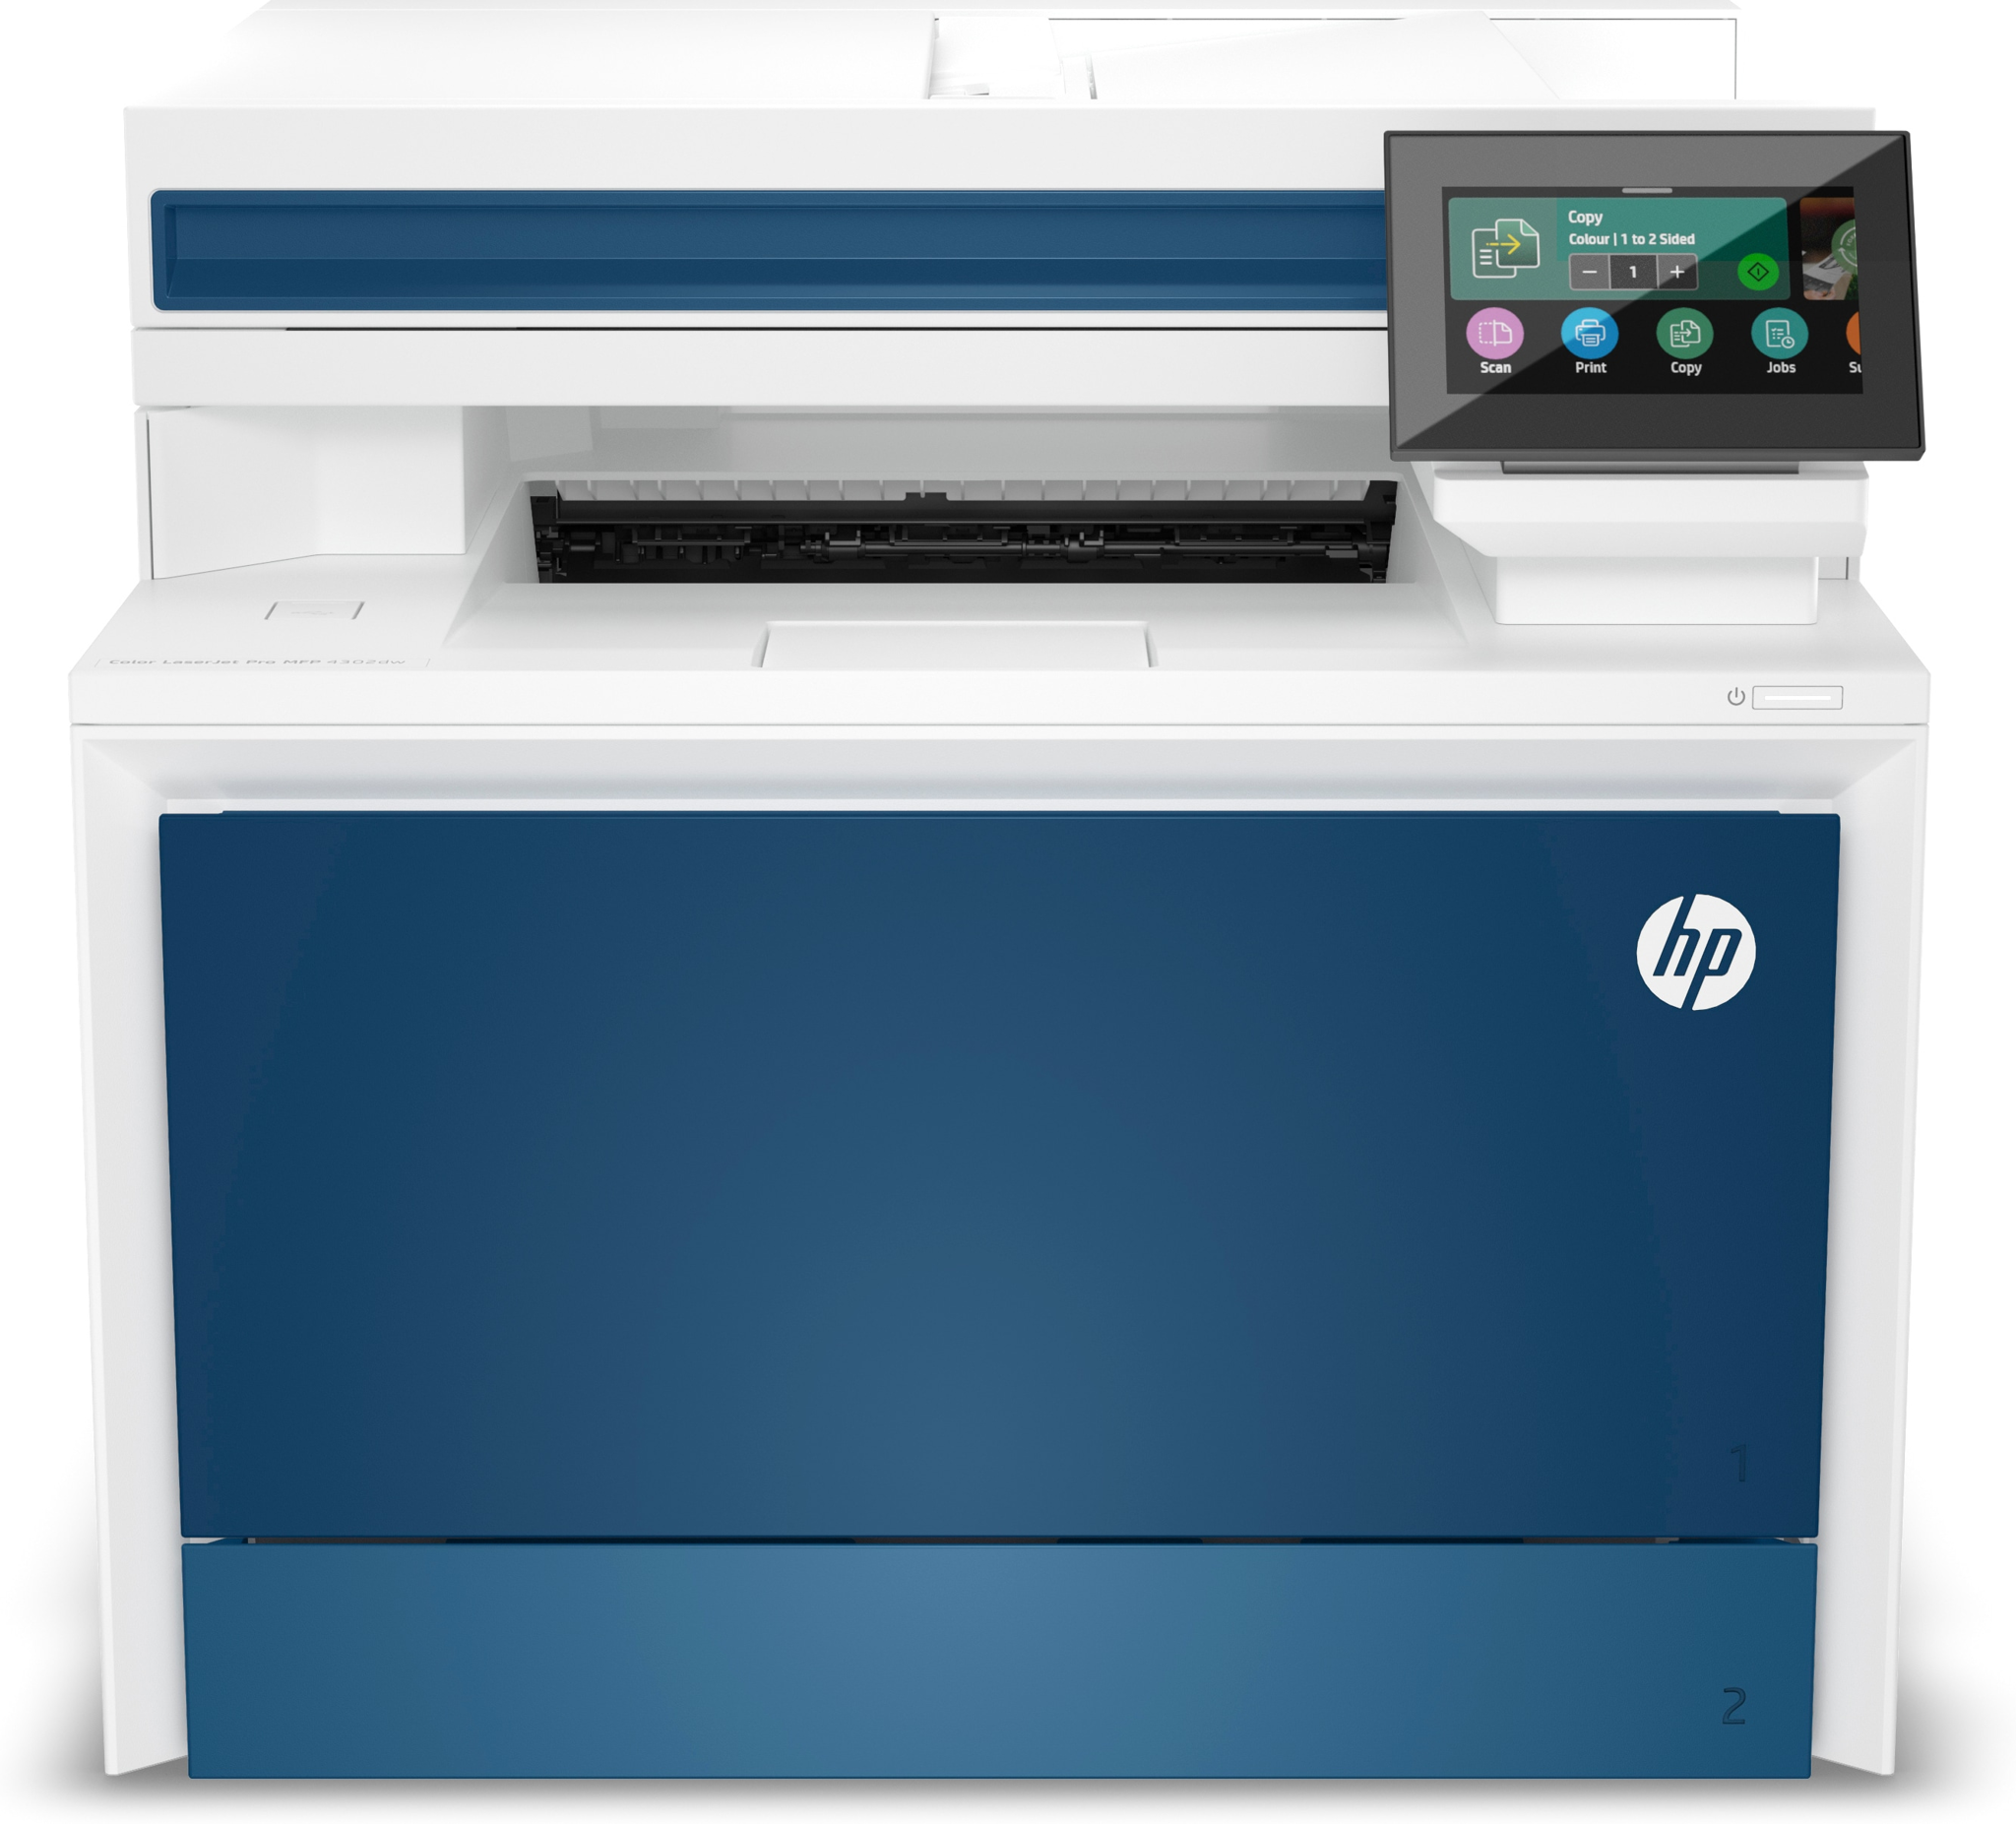 Bild von HP Color LaserJet Pro MFP 4302dw Drucker - Farbe - Drucker für Kleine und mittlere Unternehmen - Drucken - Kopieren - Scannen - Wireless; Drucken vom Smartphone oder Tablet; Automatische Dokumentenzuführung - Laser - Farbdruck - 600 x 600 DPI - A4 - Direktdr